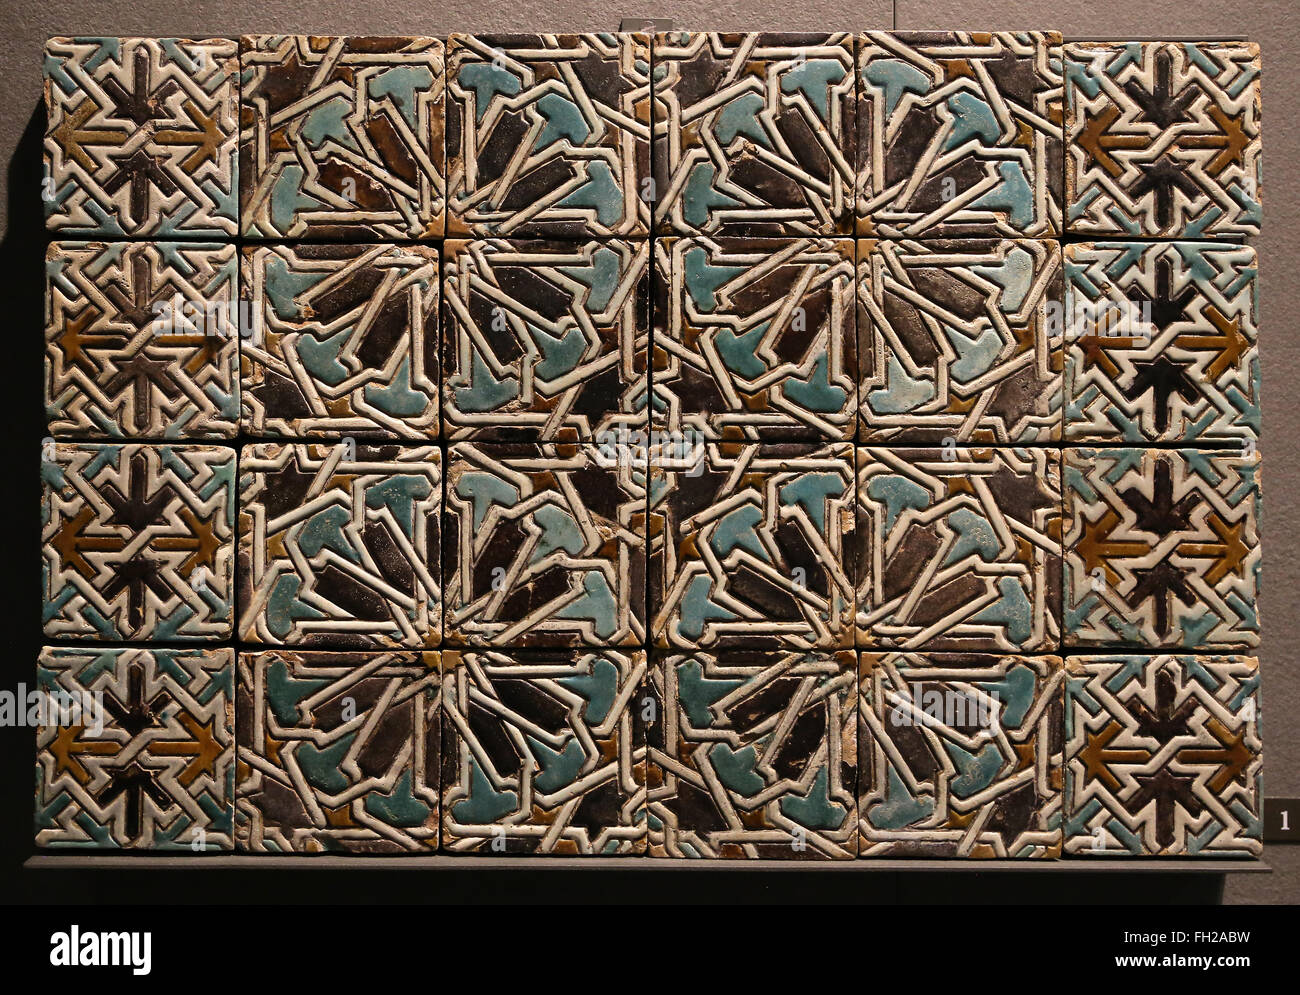 Carreaux de céramique murale. 15ème-16ème siècle. Le Maroc. Musée du Louvre. Paris. La France. Banque D'Images